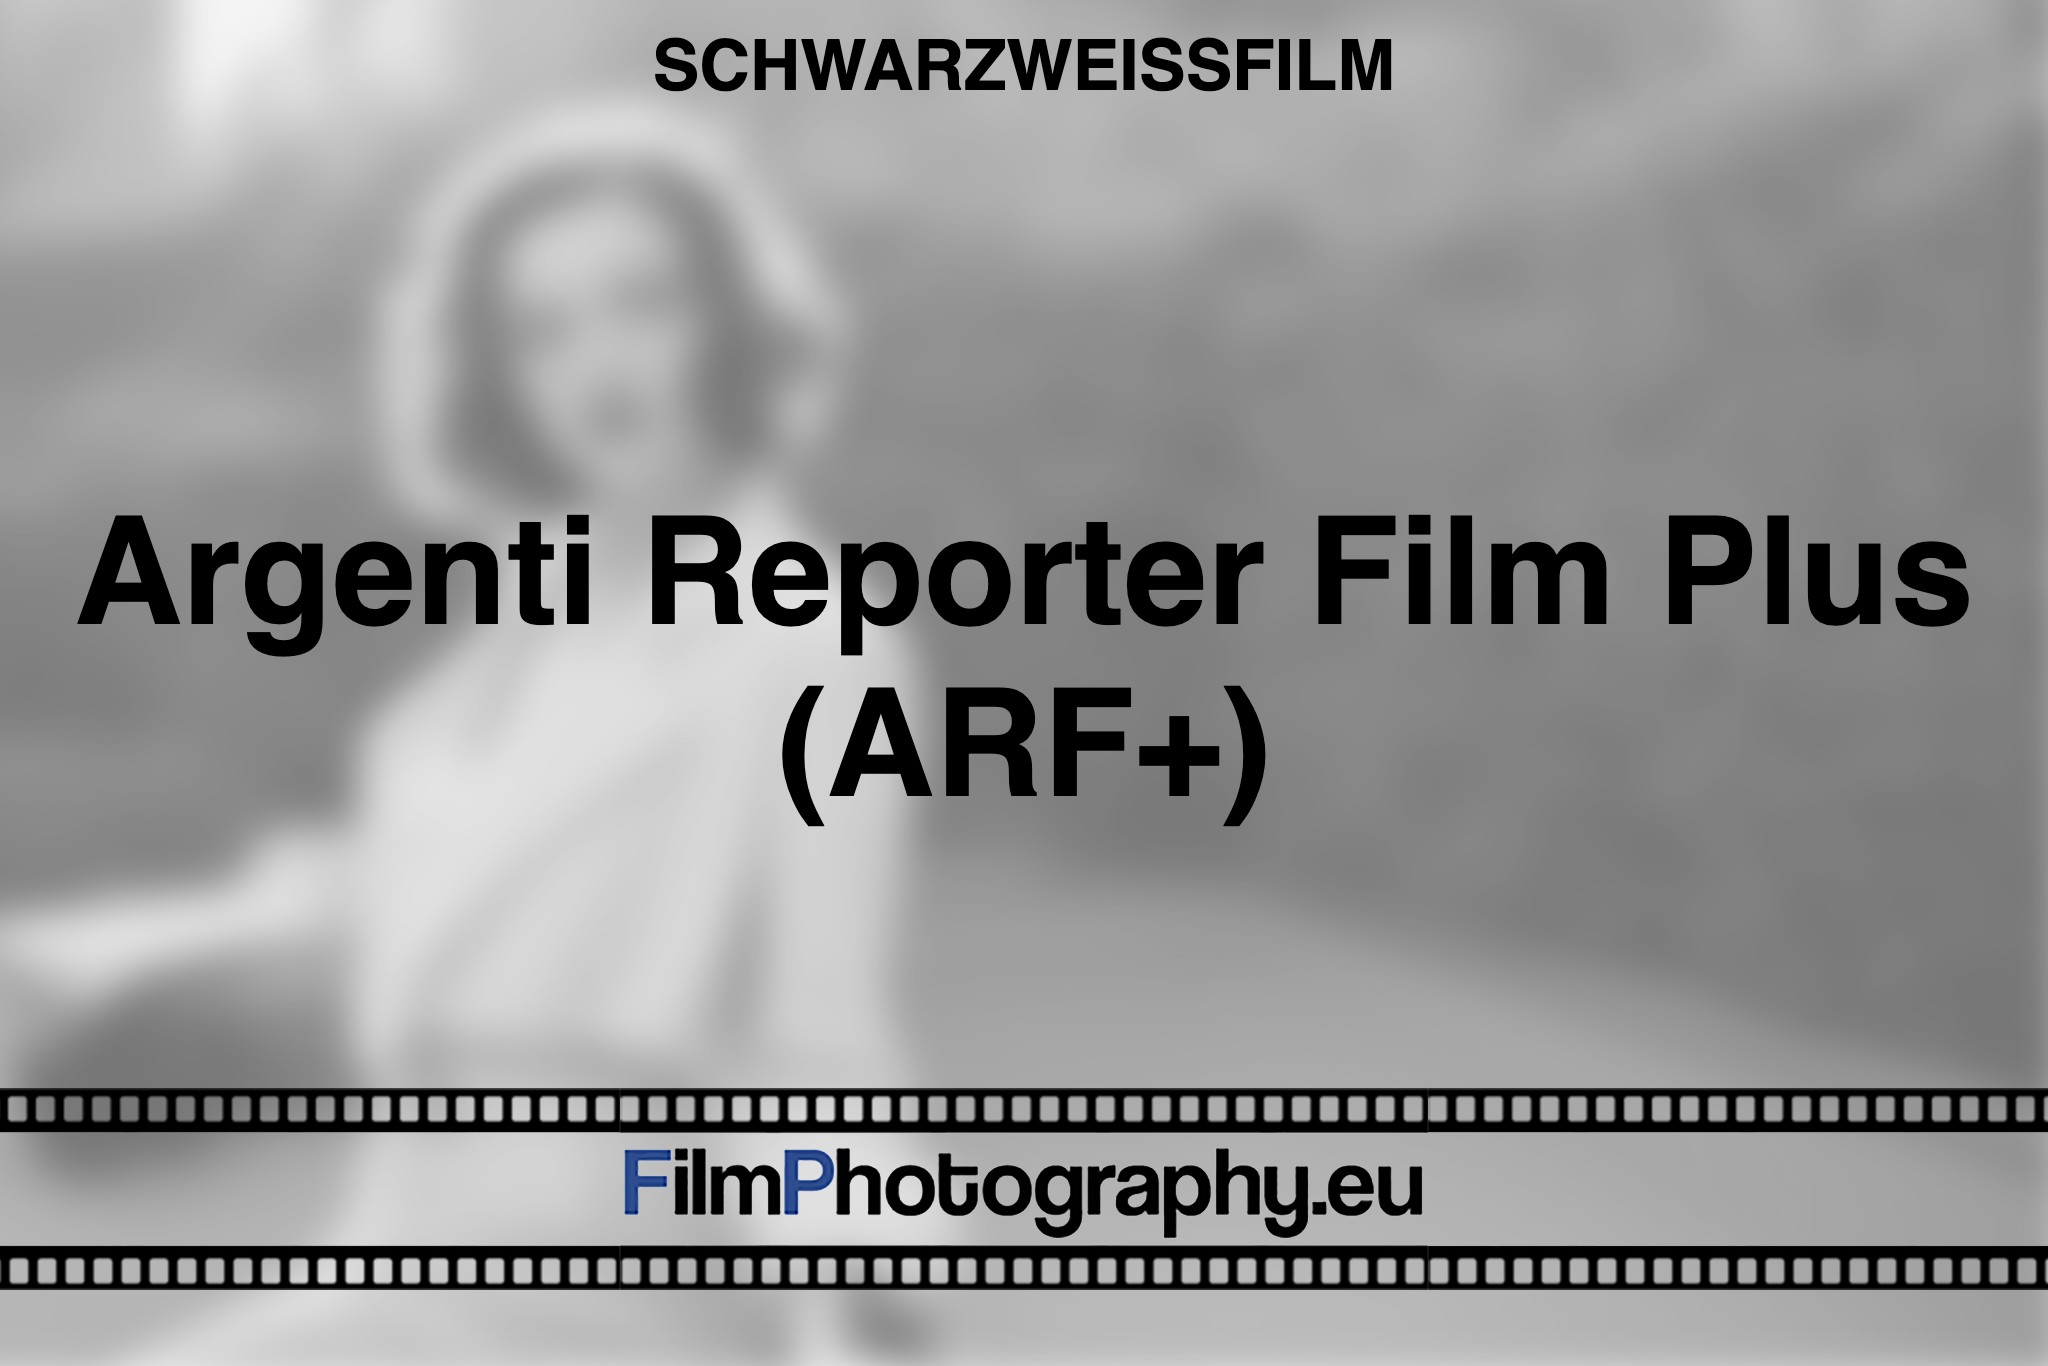 argenti-reporter-film-plus-arf-schwarzweißfilm-bnv